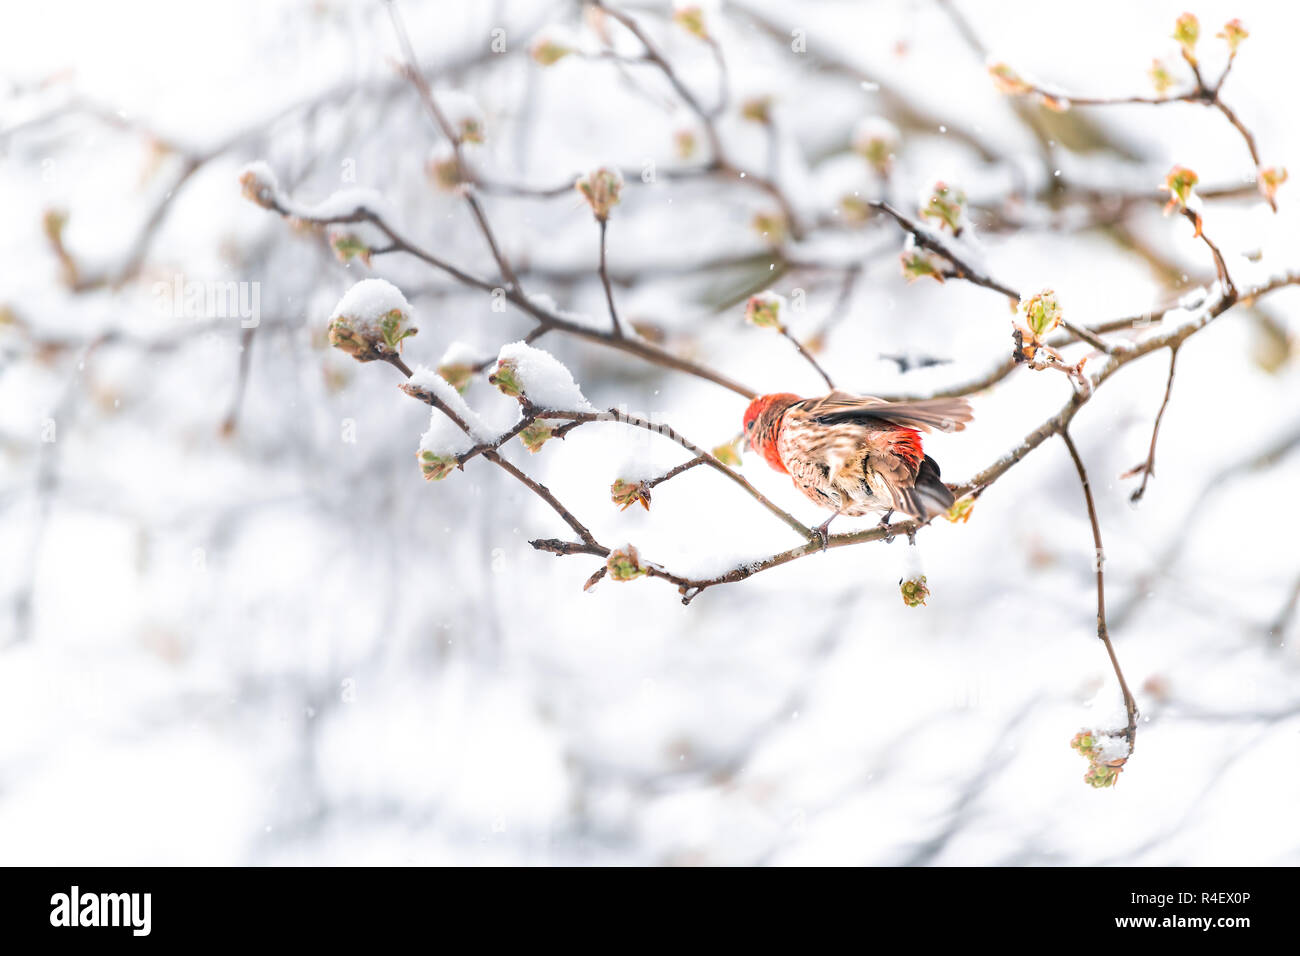 Fluffed, enflés d'un mâle rouge oiseau roselin secouant les plumes, perché sur sakura, cerisier arbre branche couverte de neige avec reservoir pendant les snowin Banque D'Images